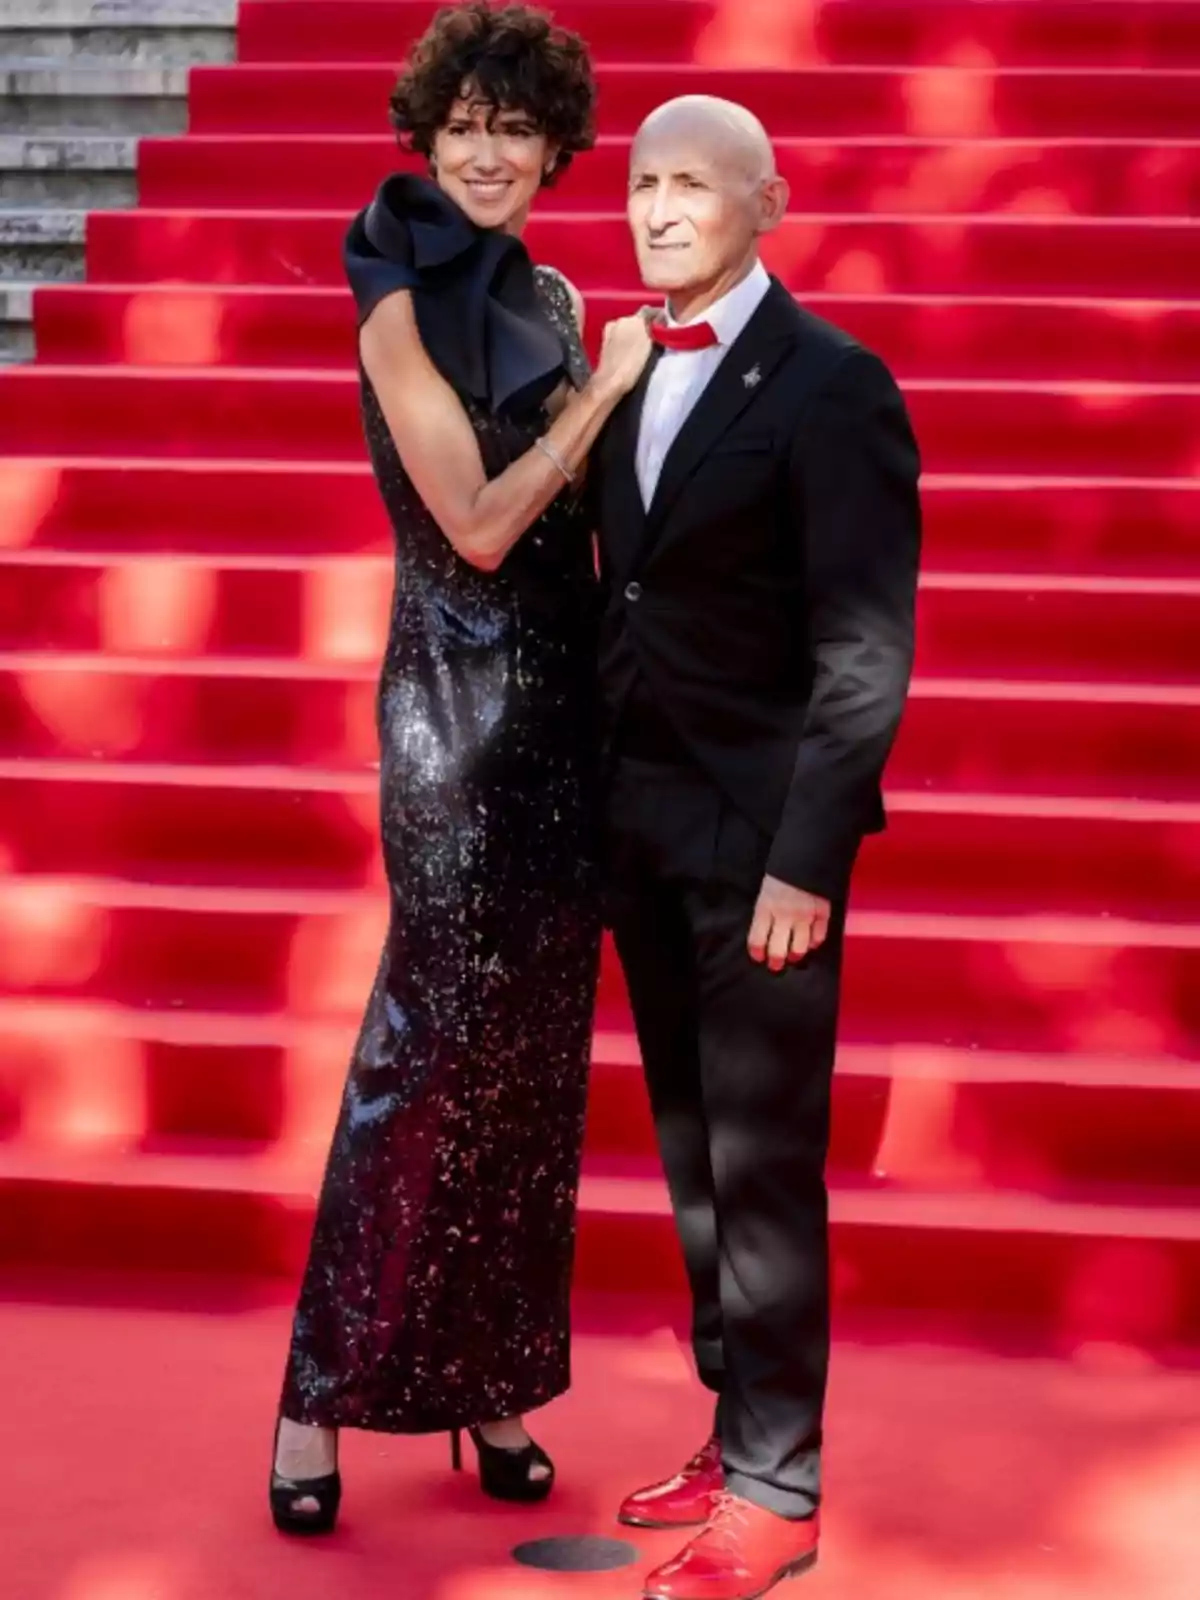 Una pareja elegantemente vestida posa en una alfombra roja con escaleras de fondo.